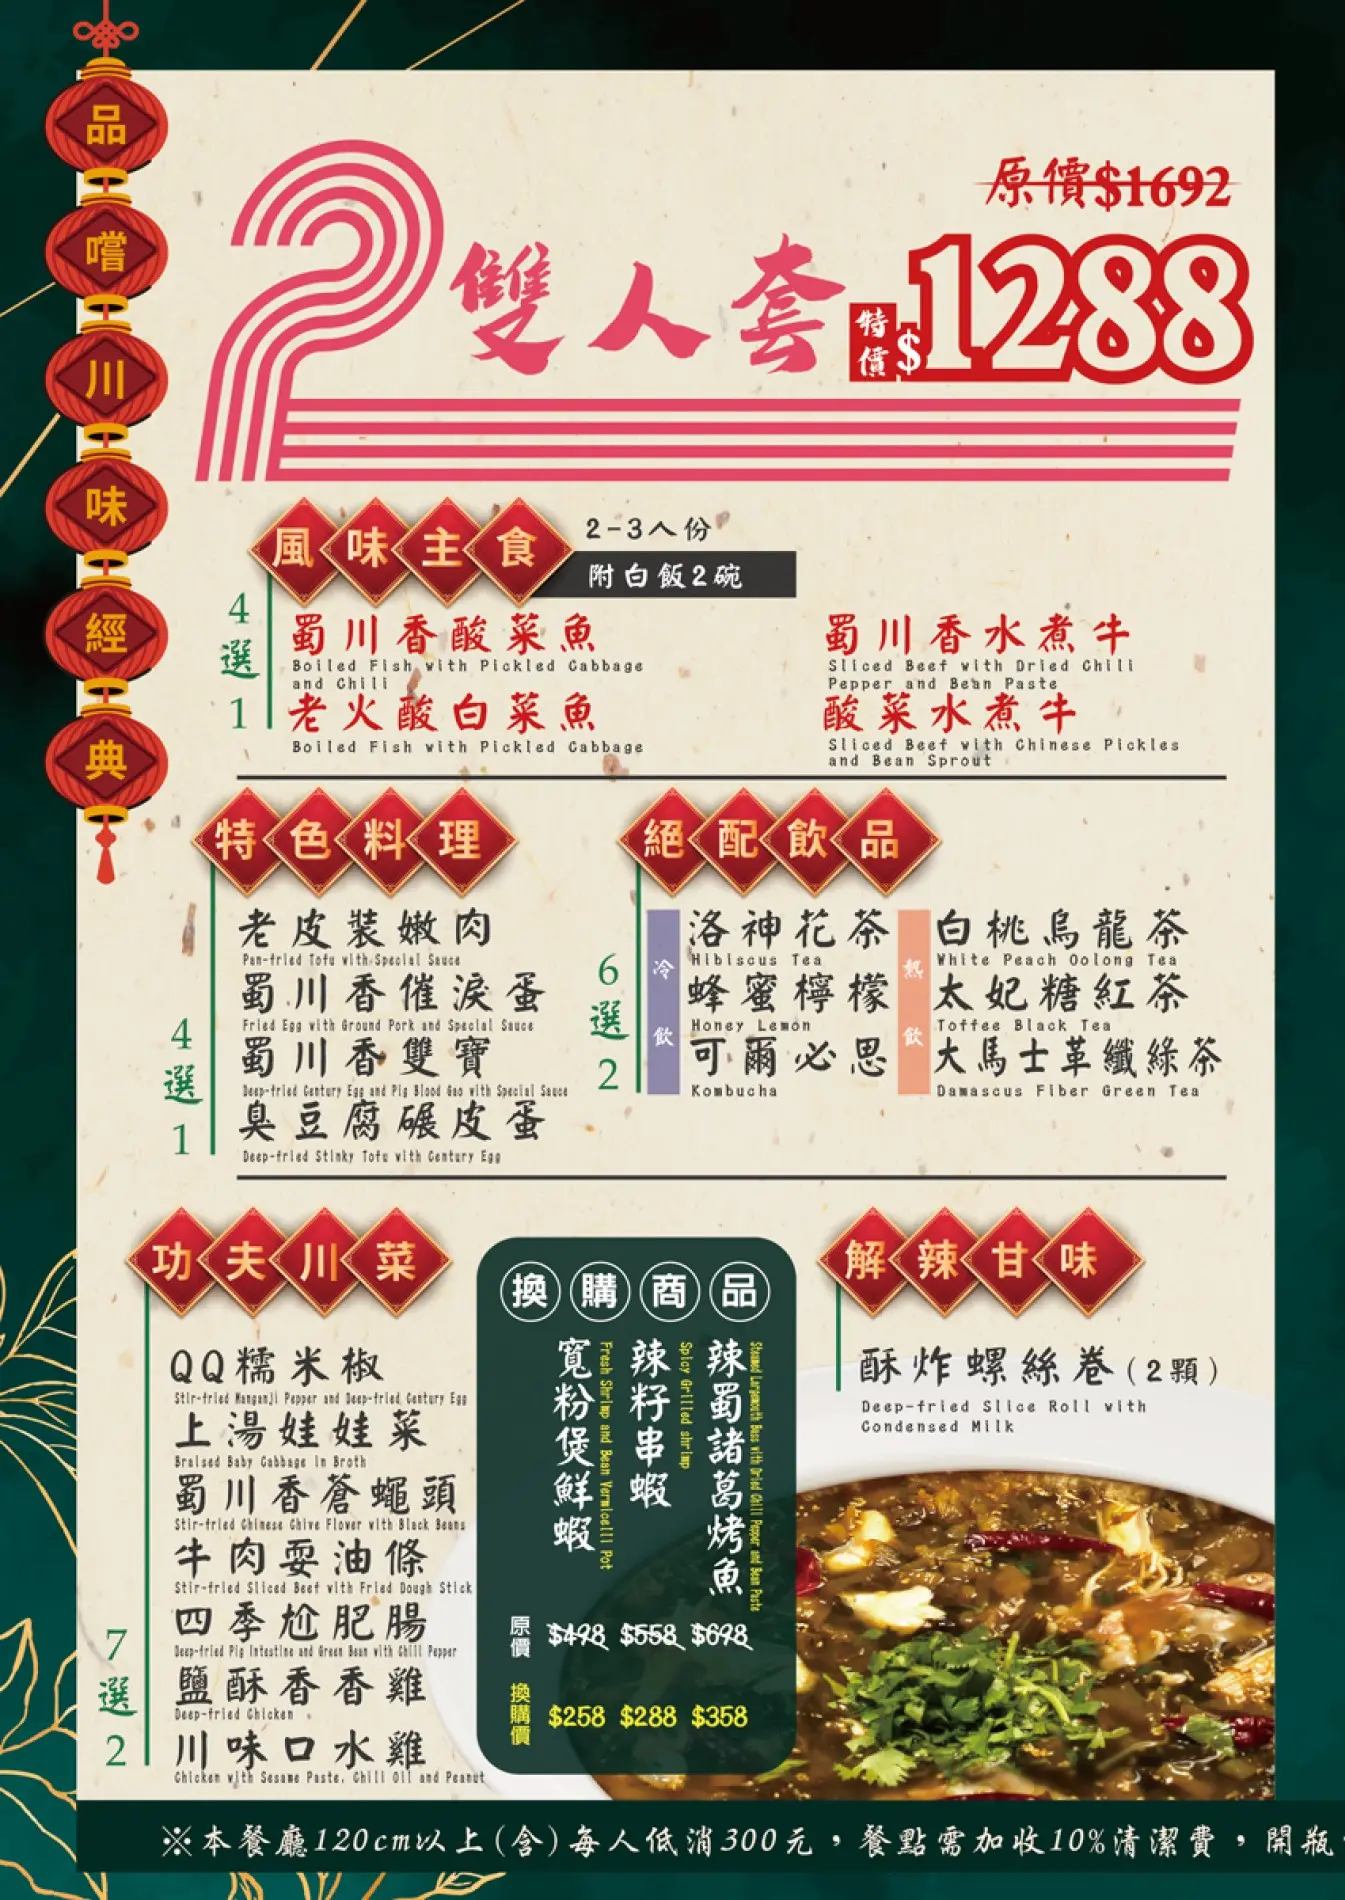 「蜀川香酸菜魚」雙人套餐菜單